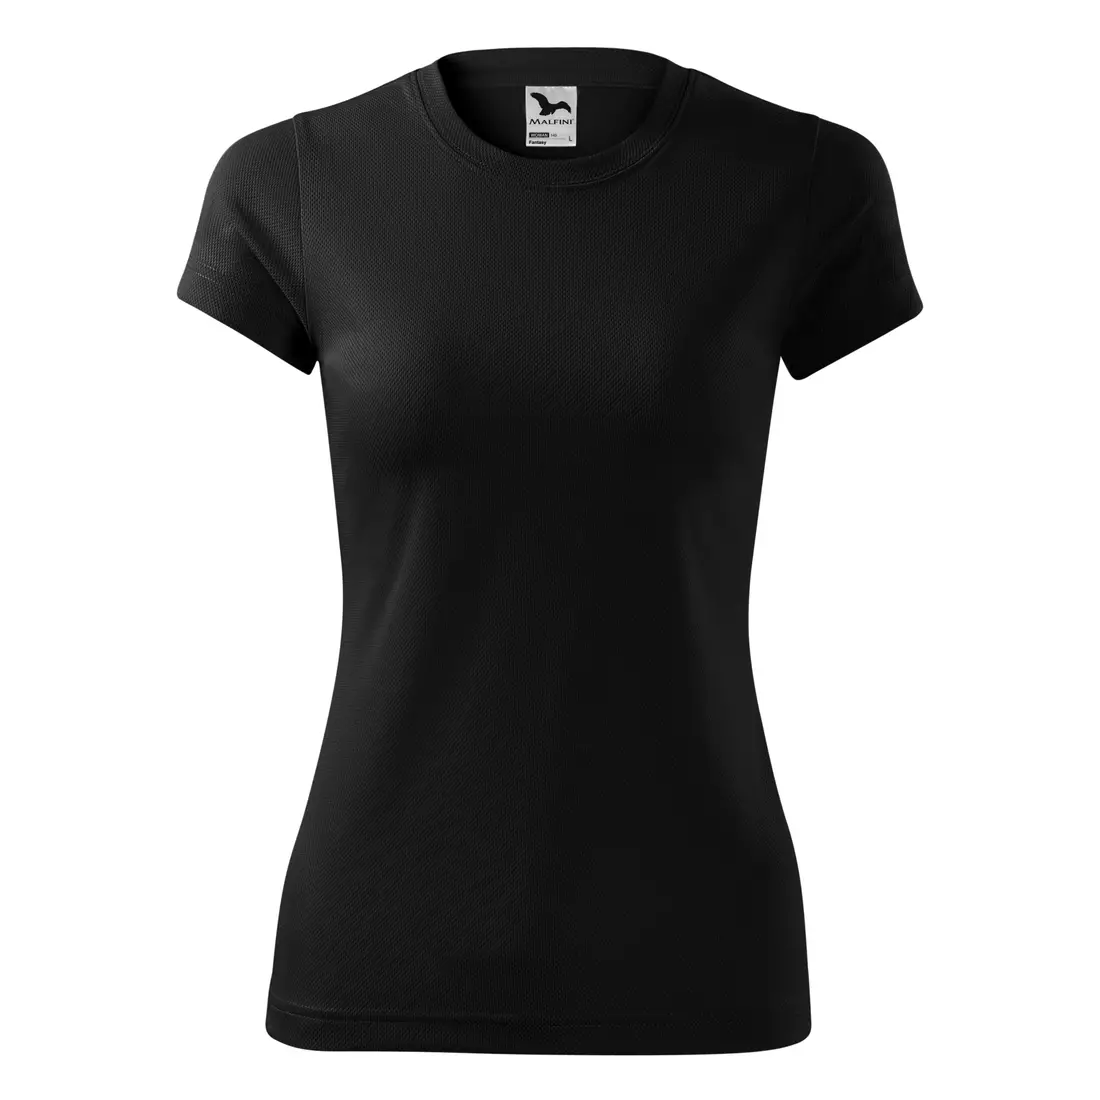 ALFINI FANTASY - Dámske športové tričko z 100 % polyesteru, čierne 1400112-140